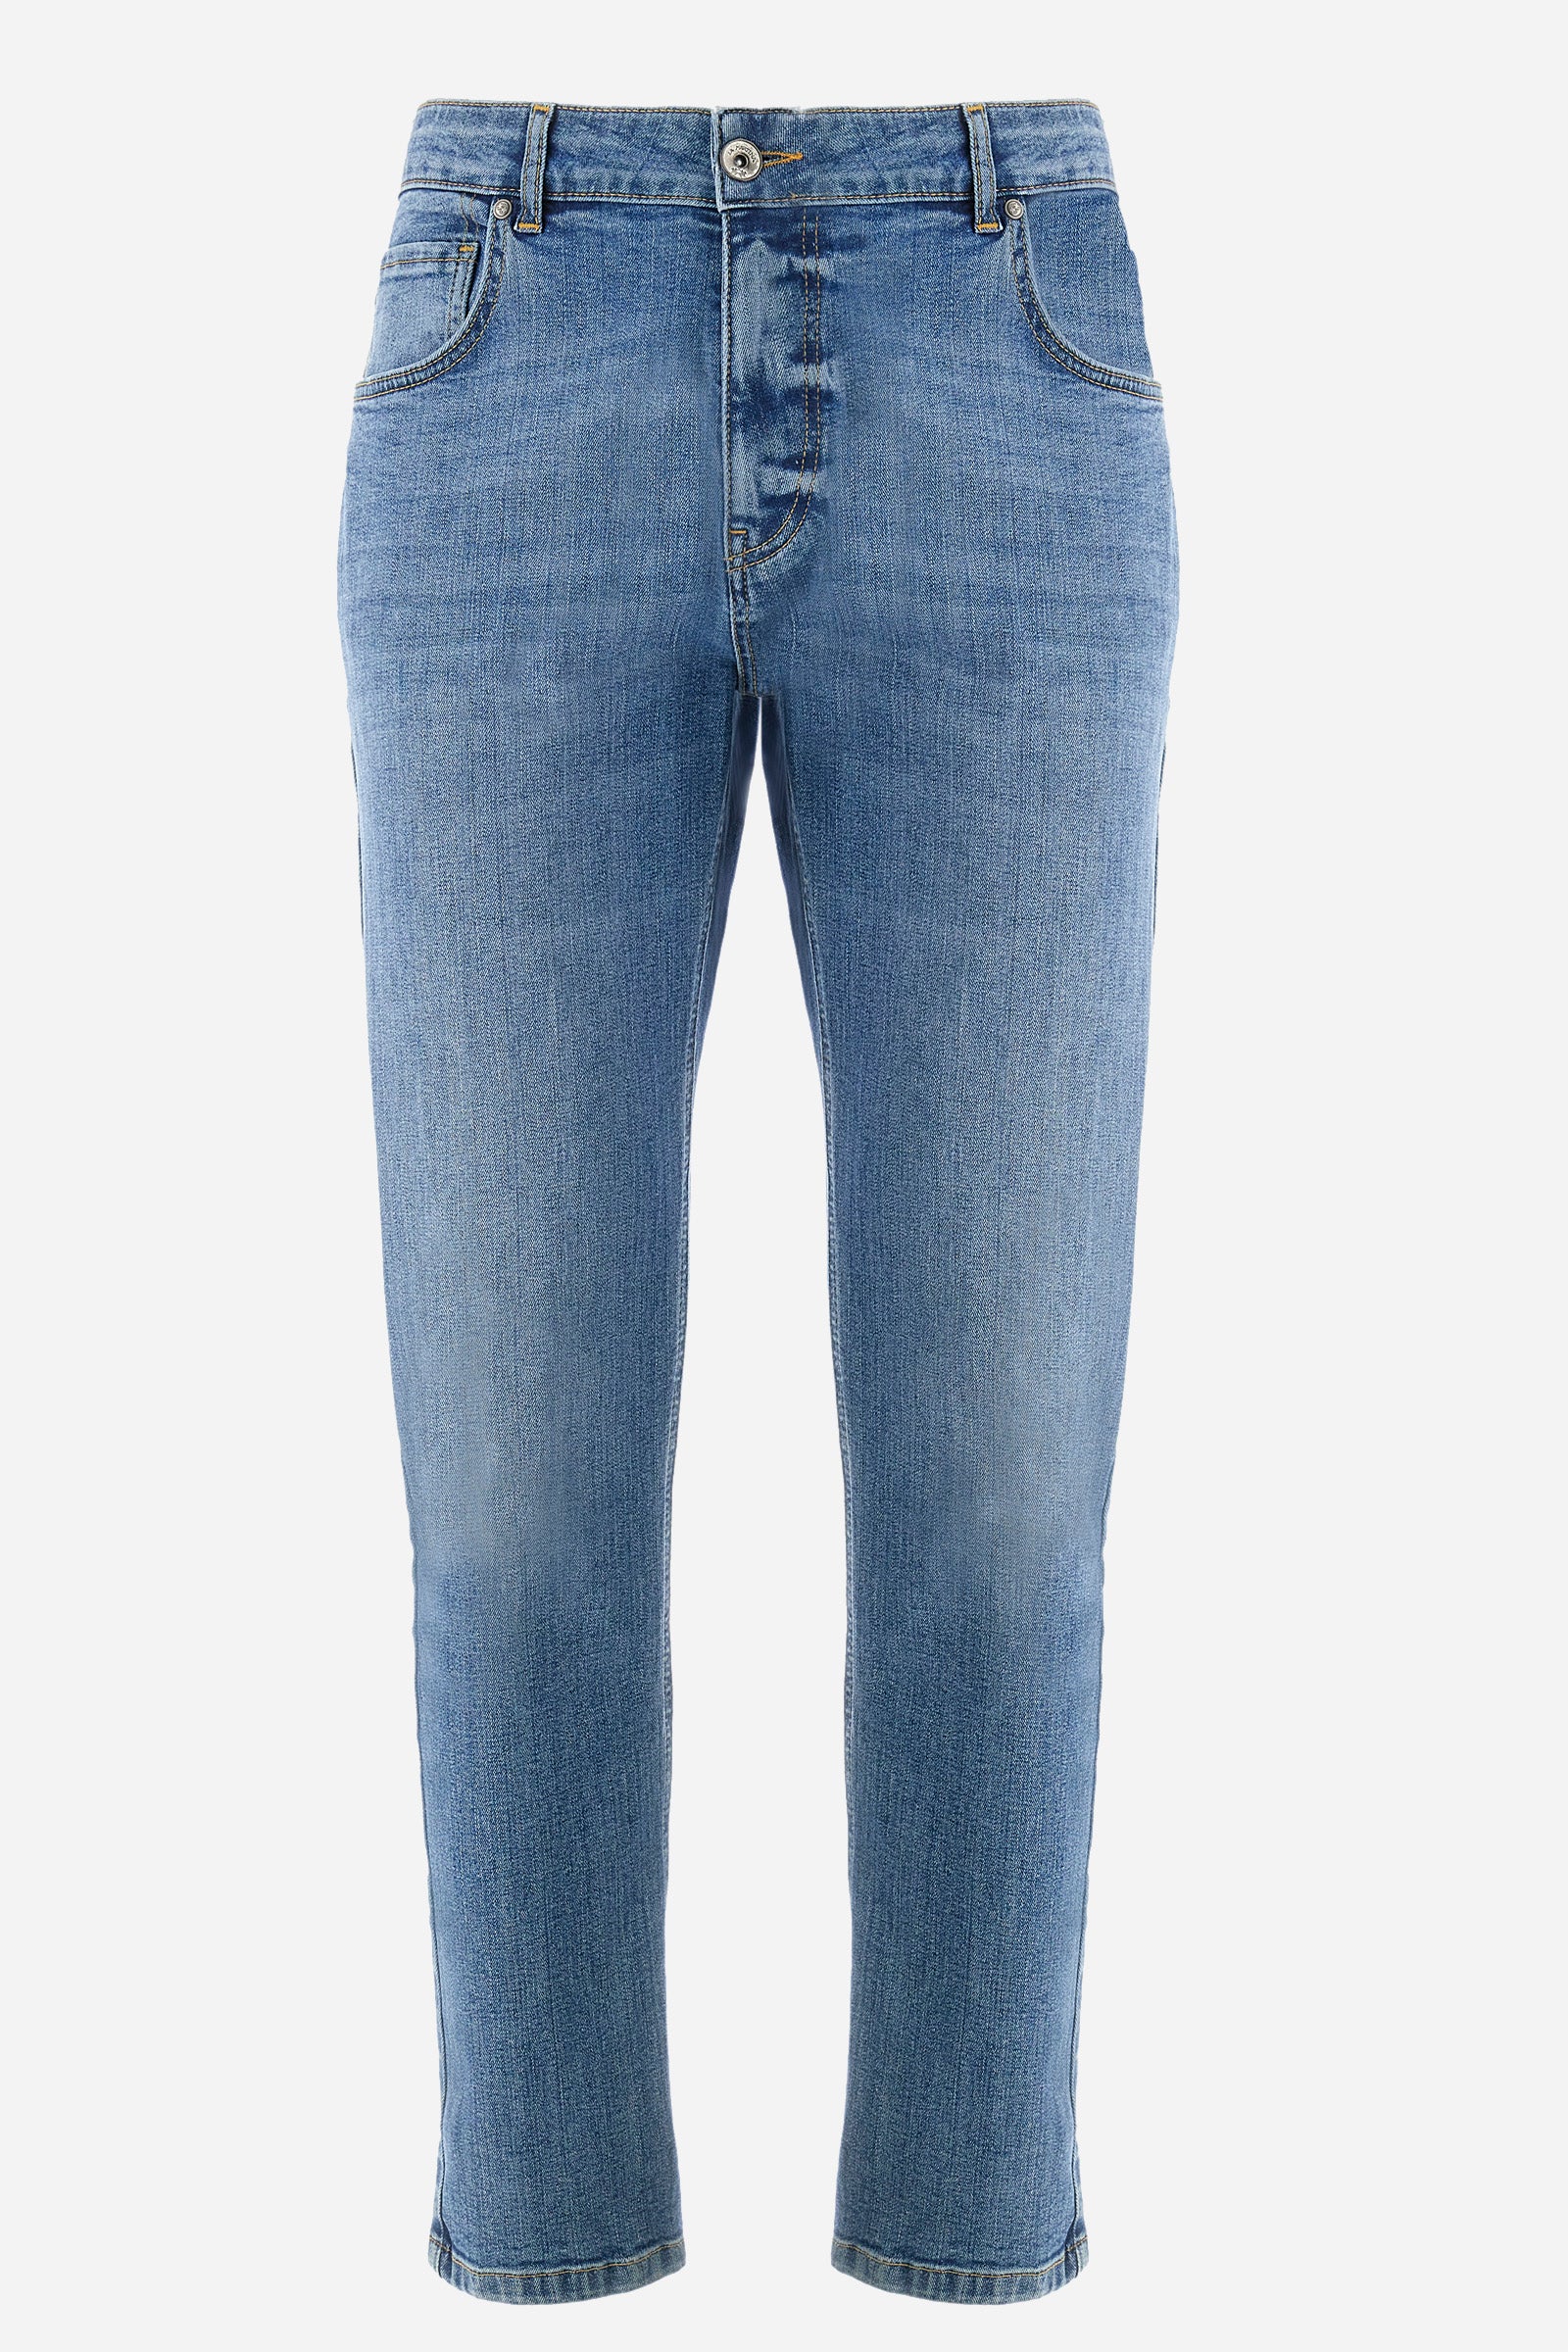 Jeans de 5 bolsillos de corte recto en algodón elastizado - Yonaguska